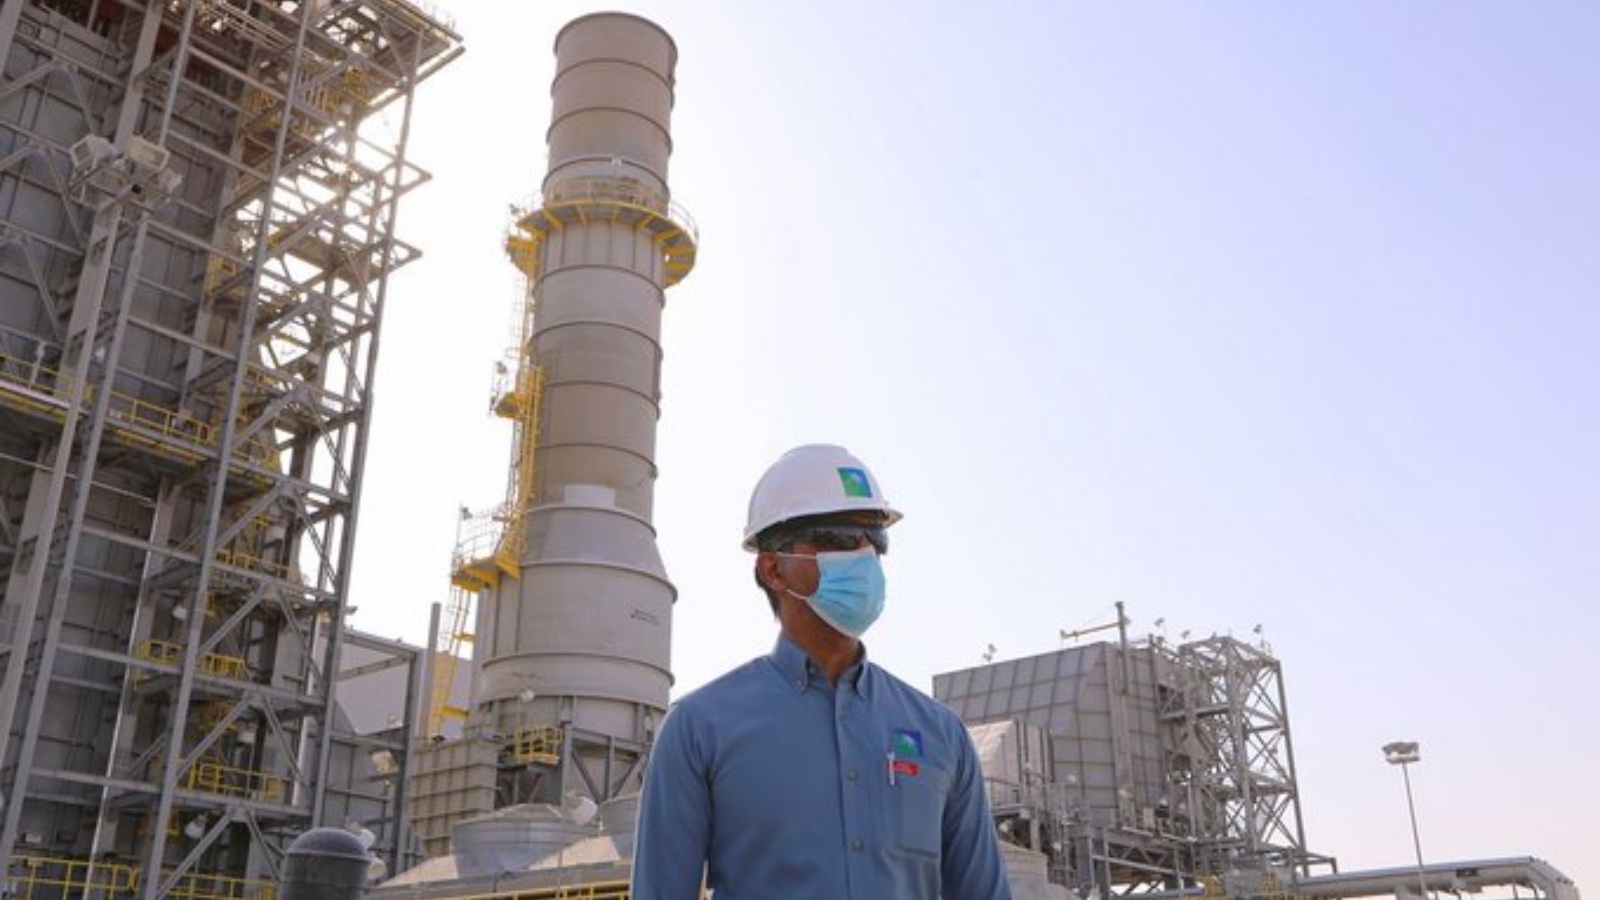 مهندس في المنشأة التابعة لشركة أوبك لإنتاج وتصدير البترول في المملكة العربية السعودية.